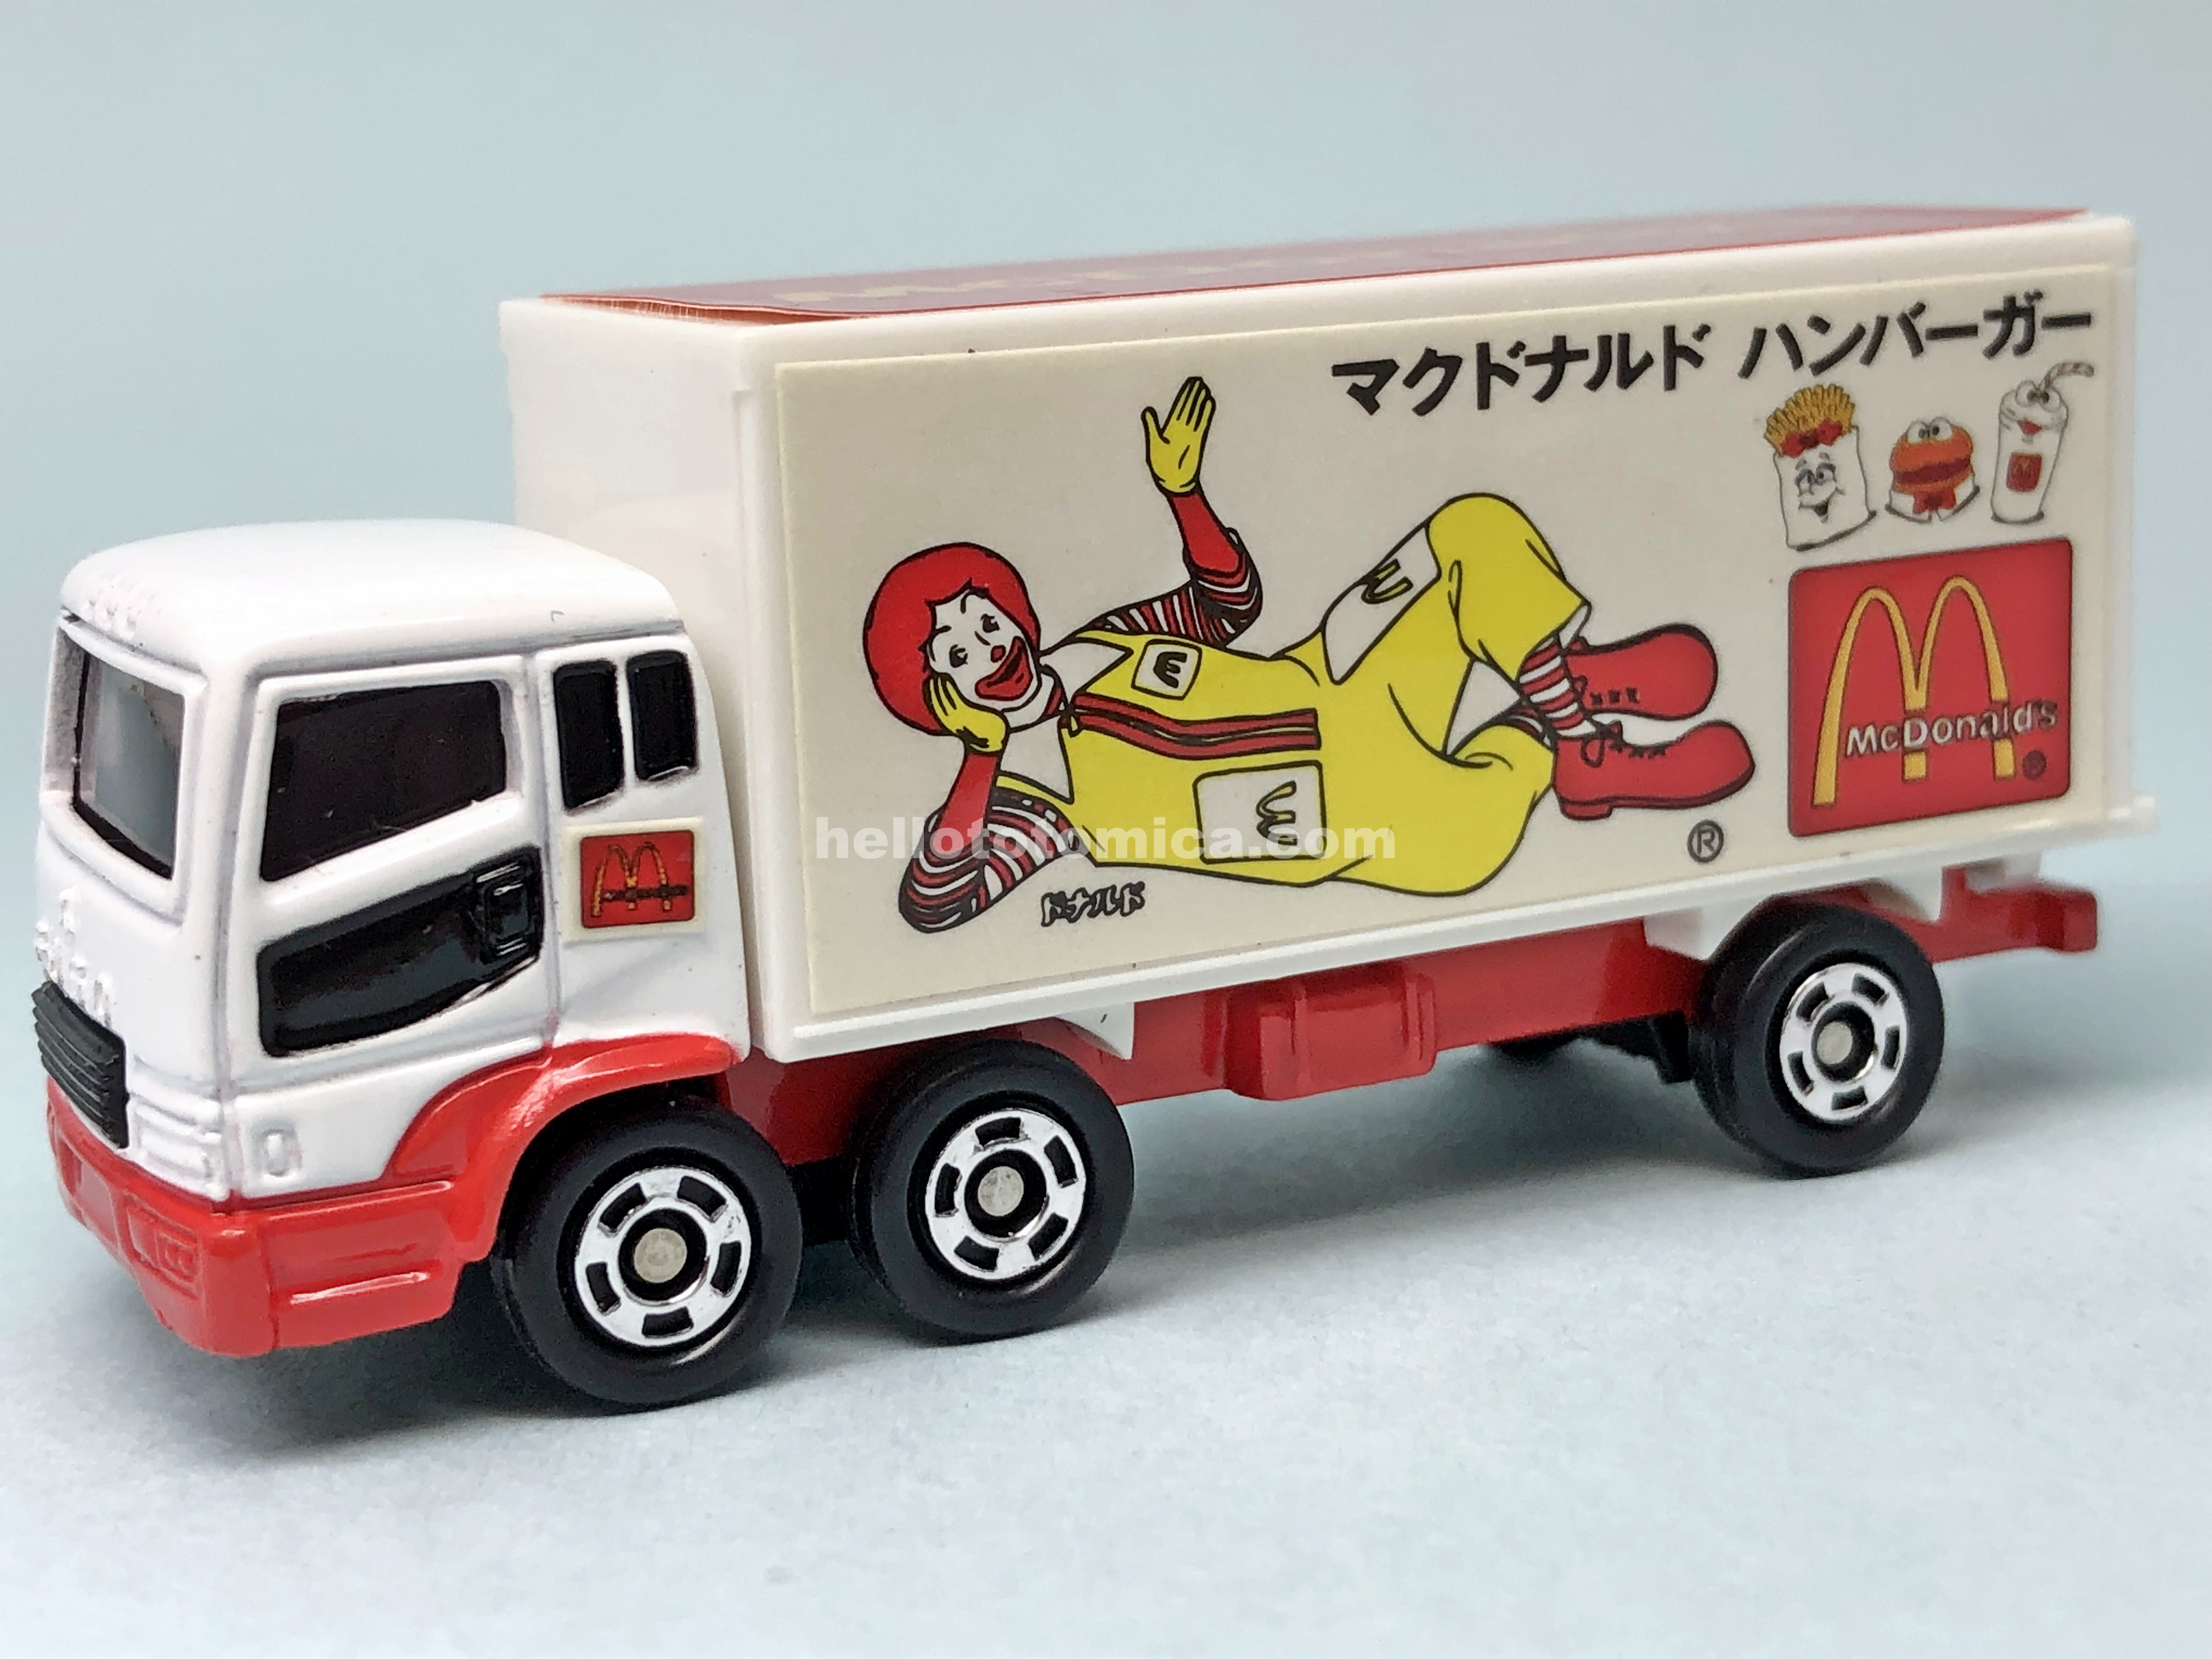 7-4 McDonald's Truck